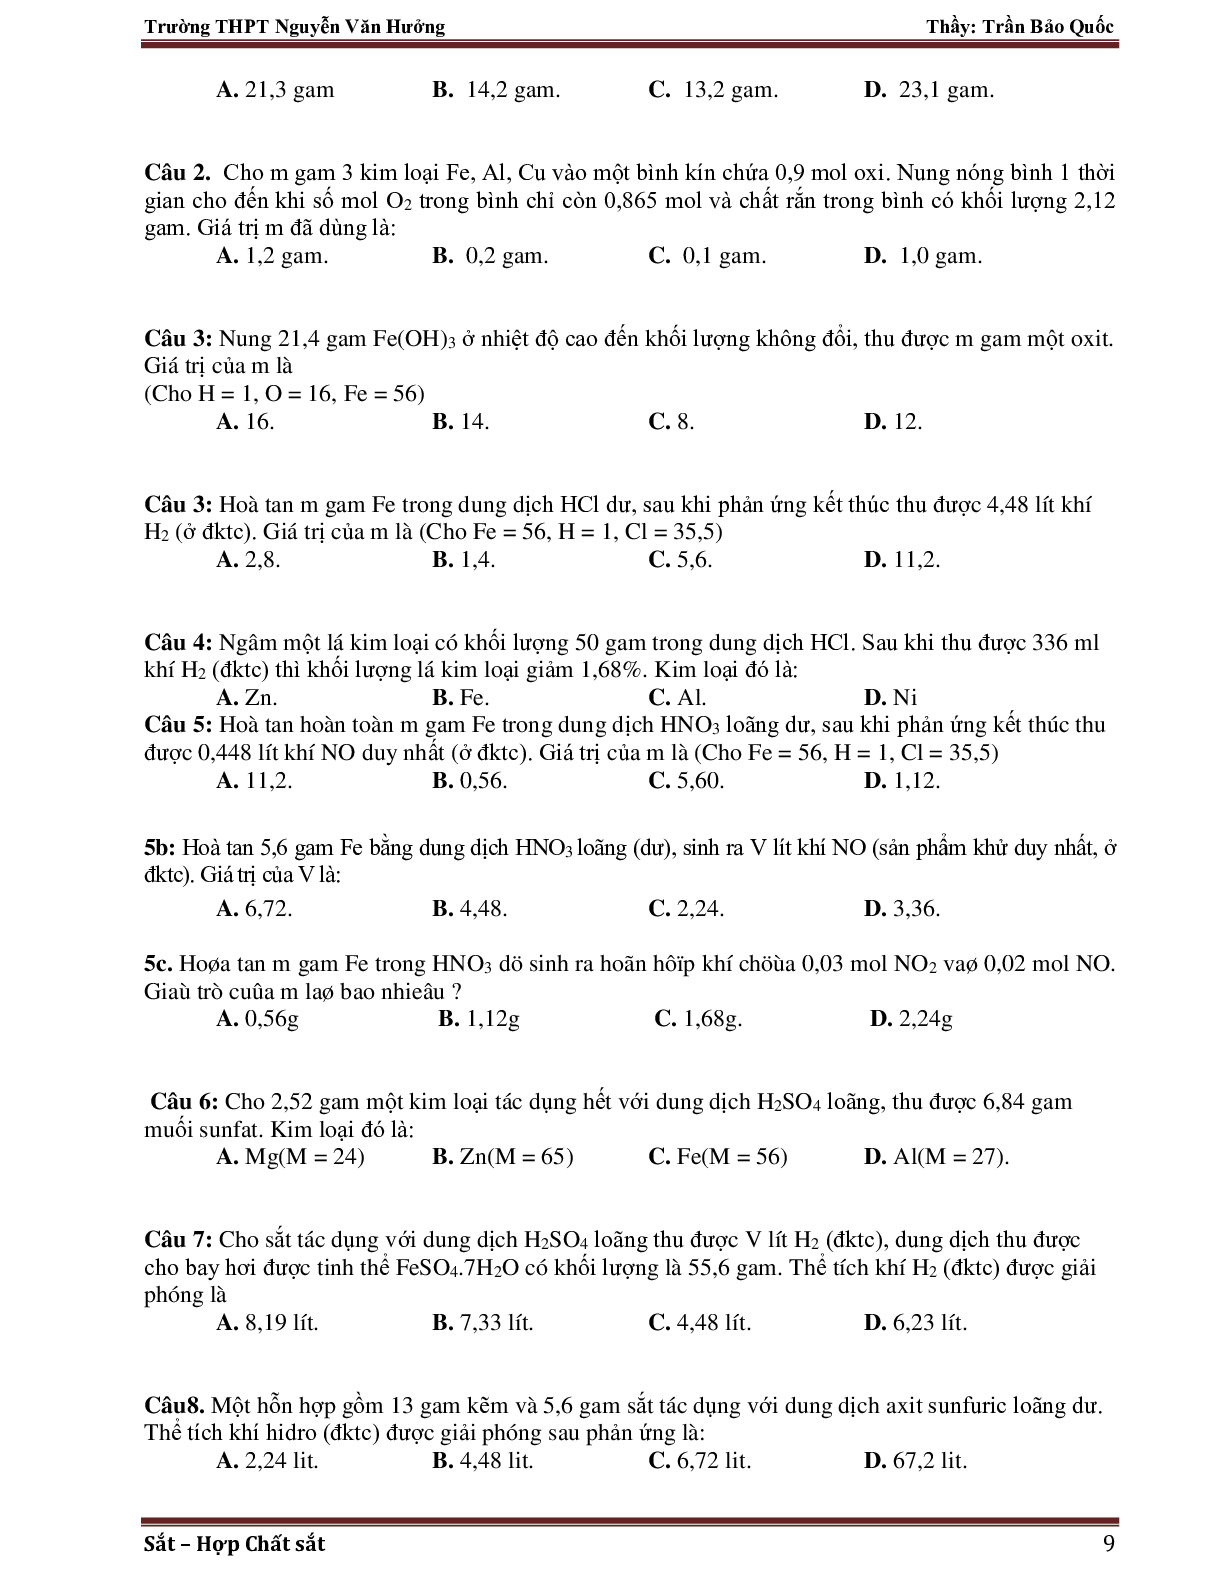 Giáo án Hóa học 12 bài 37: Luyện tập về Sắt mới nhất (trang 9)